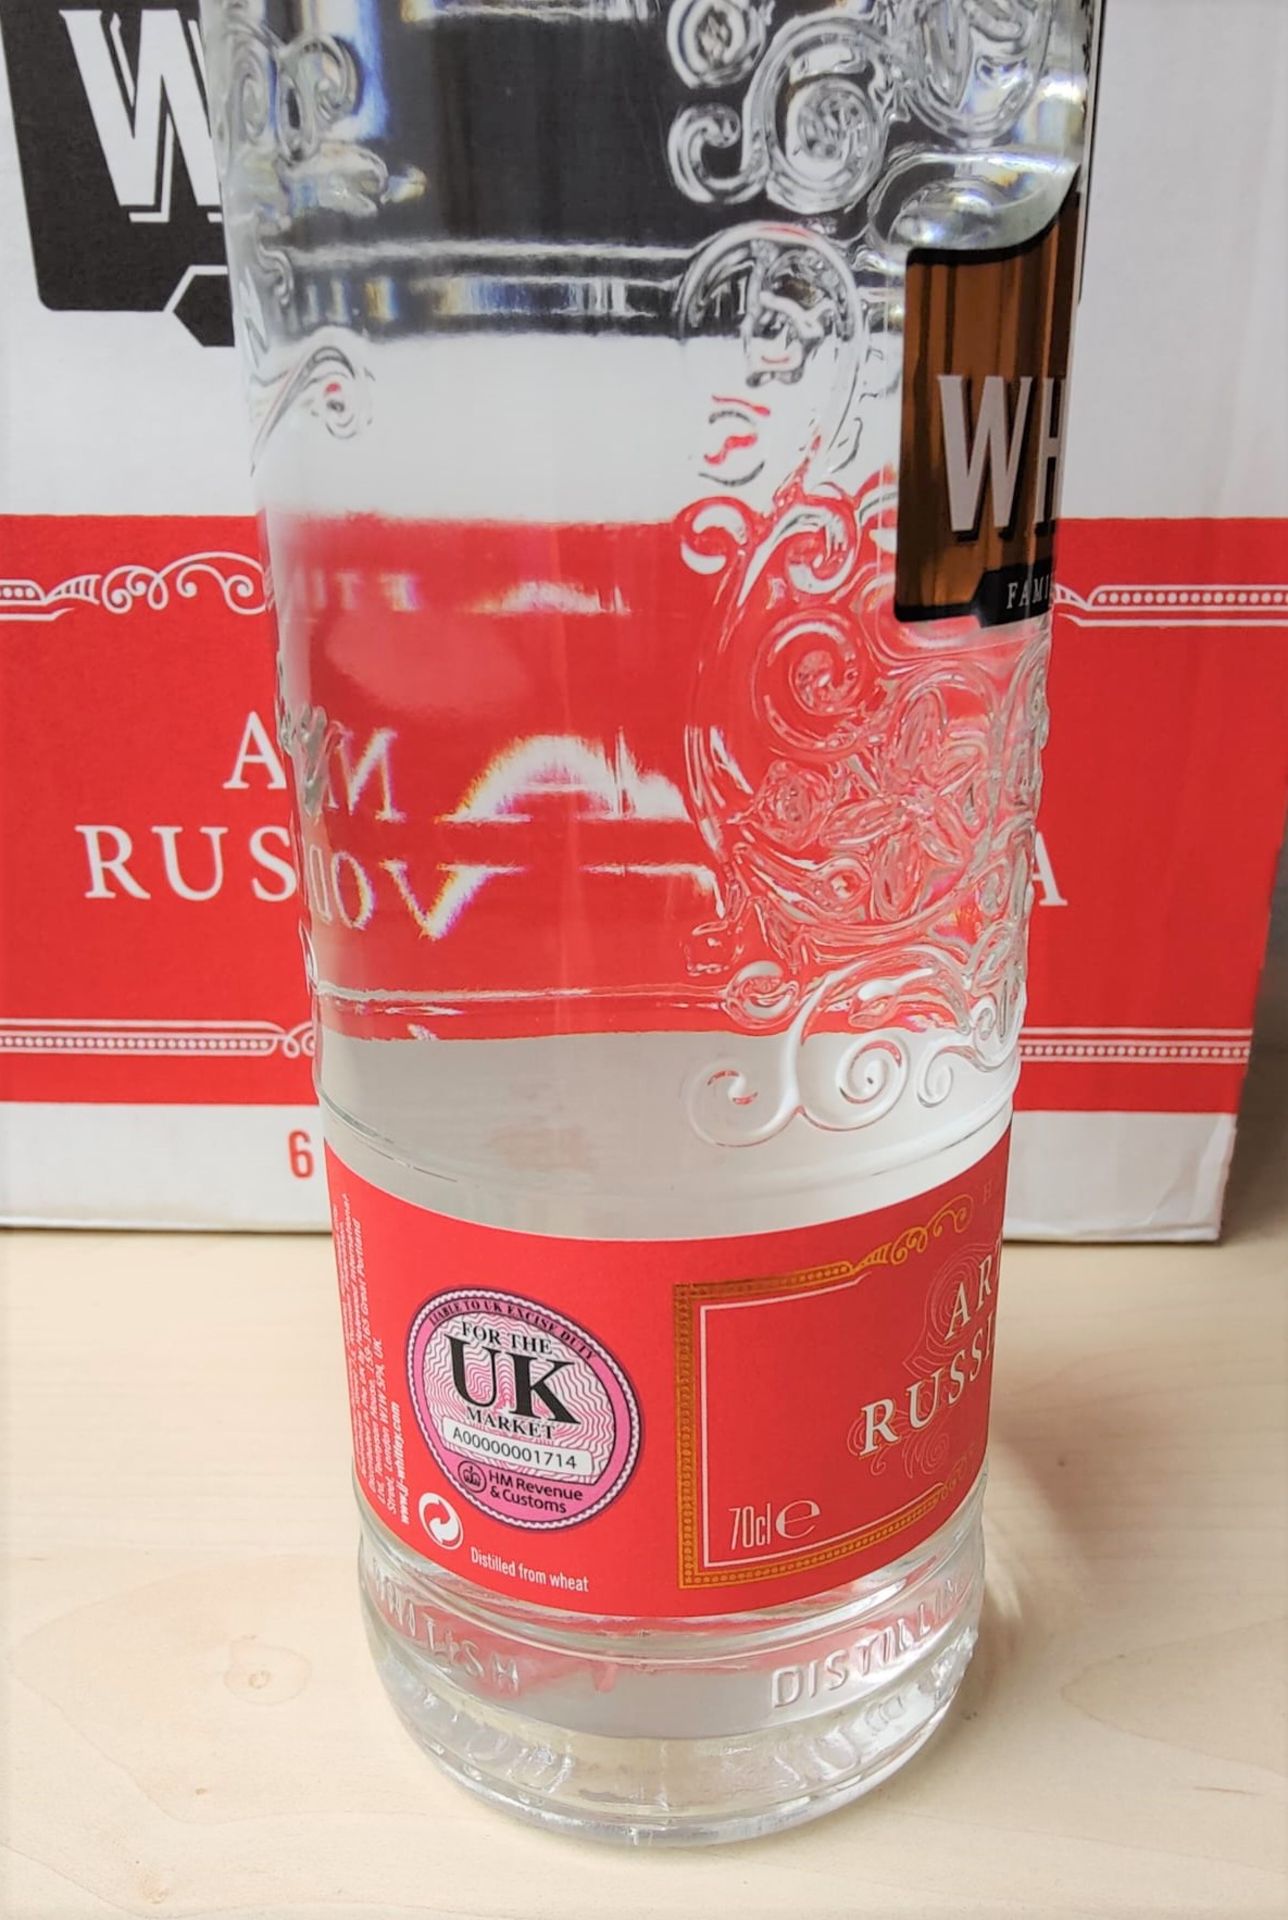 1 x Bottle of J.J Whitley Artisanal 70cl Vodka - Multi Award Winning Vodka - 38% Volume - New - Image 2 of 3